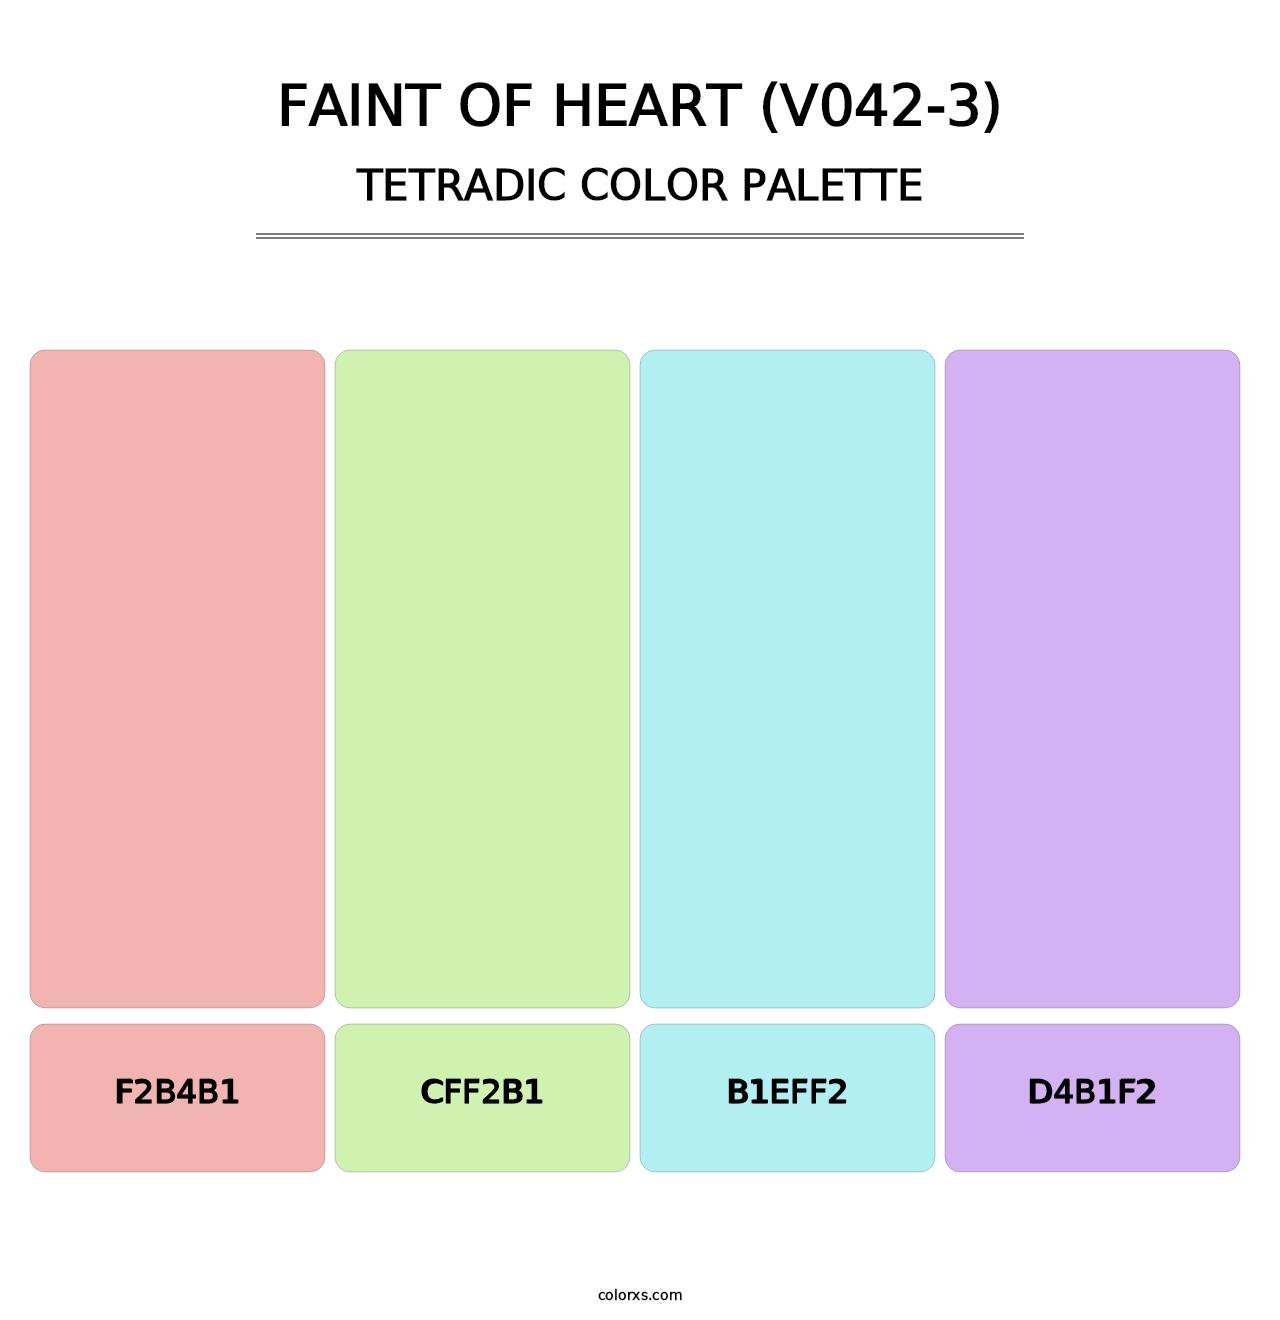 Faint of Heart (V042-3) - Tetradic Color Palette